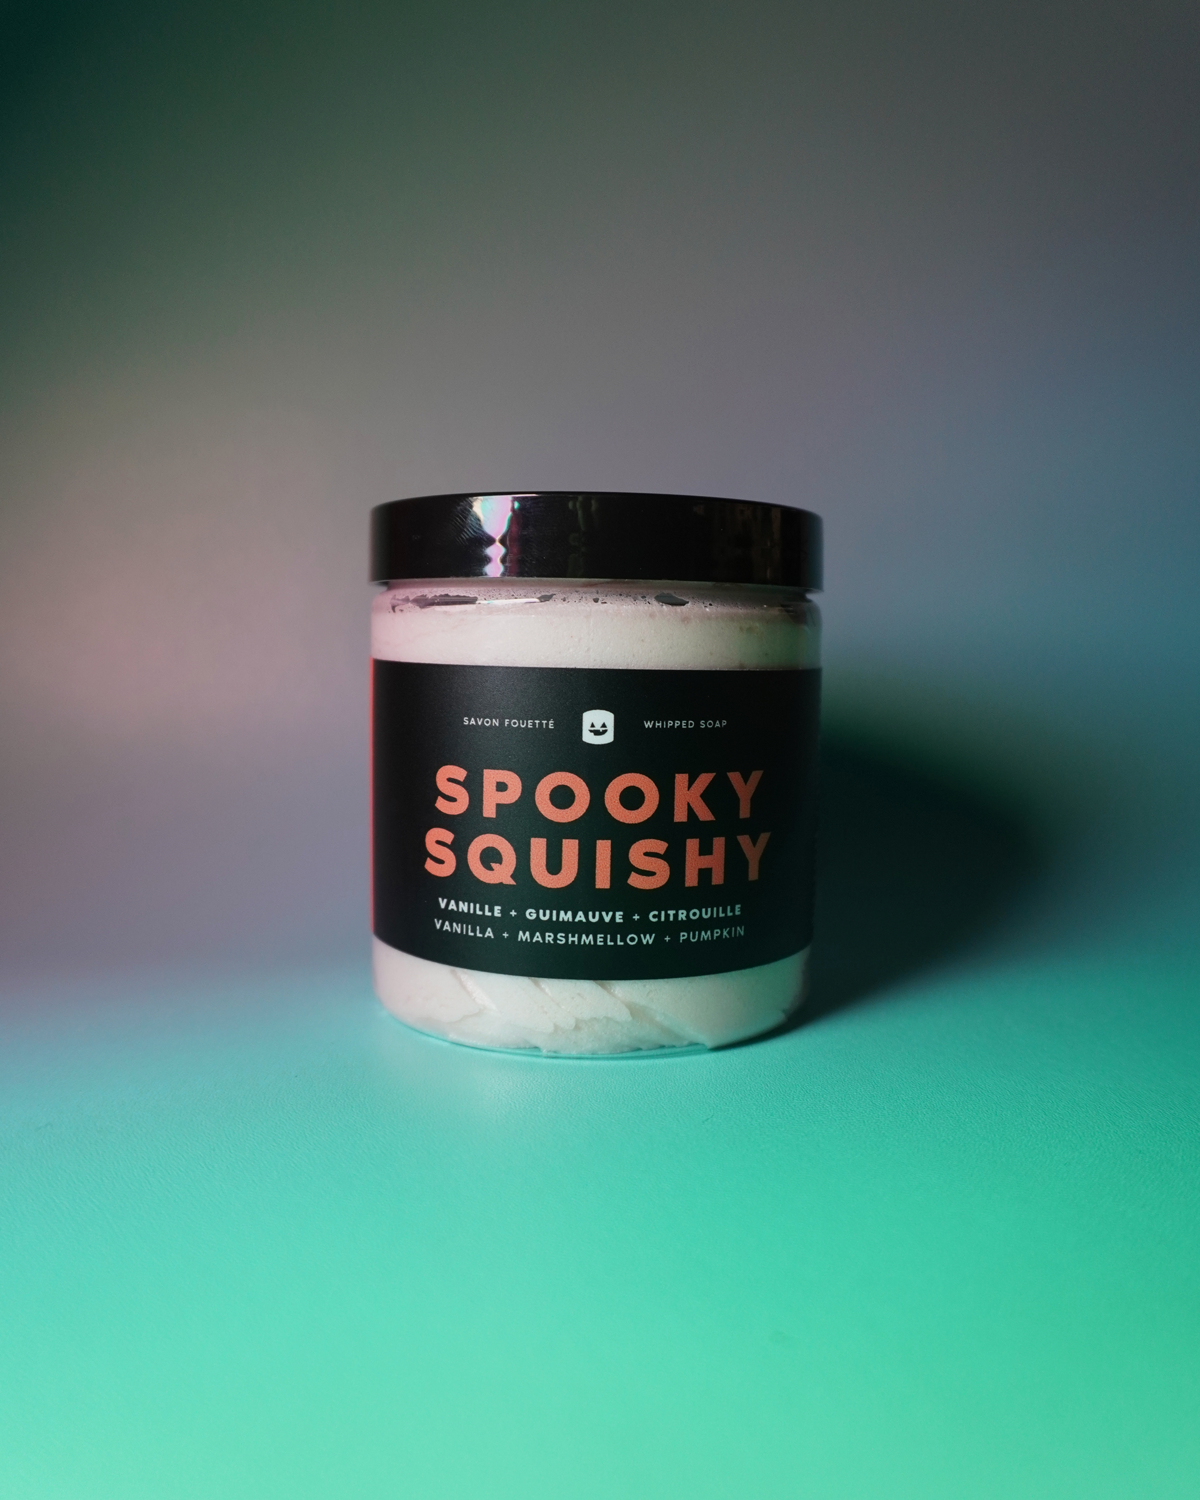 Savon fouetté Spooky Squishy Vanille + Guimauve 